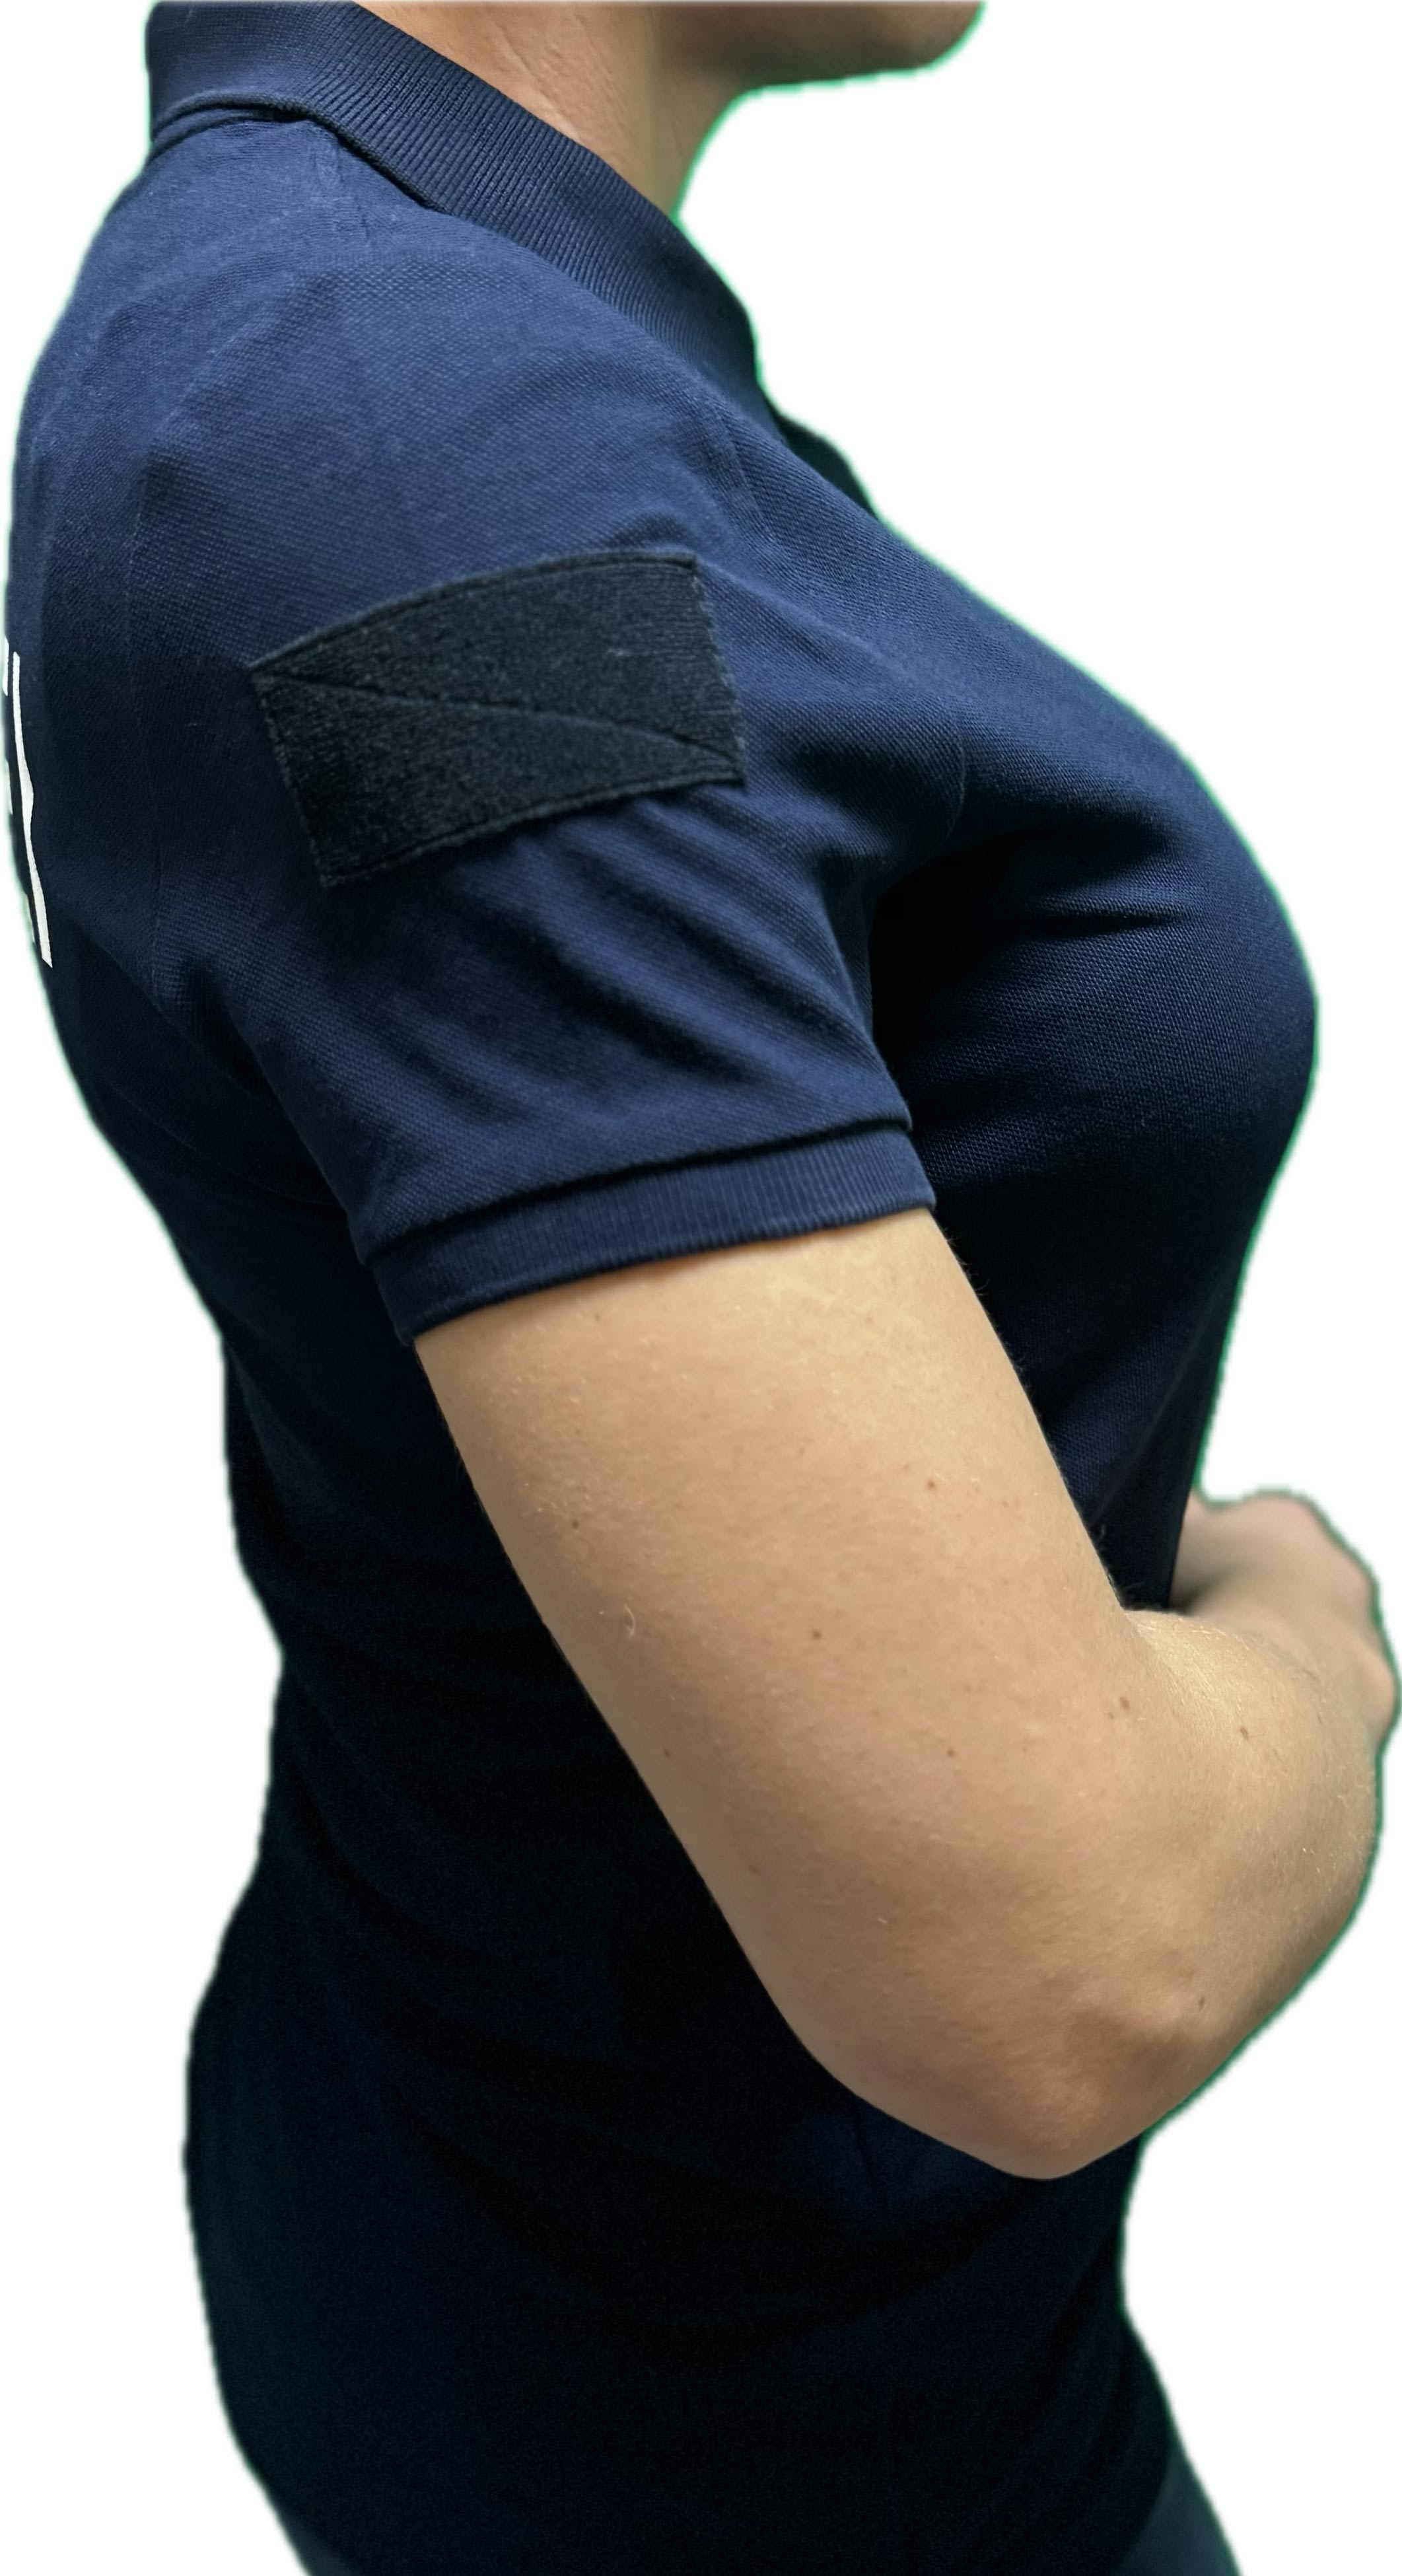 Polizei-Polo-Shirts Kurz